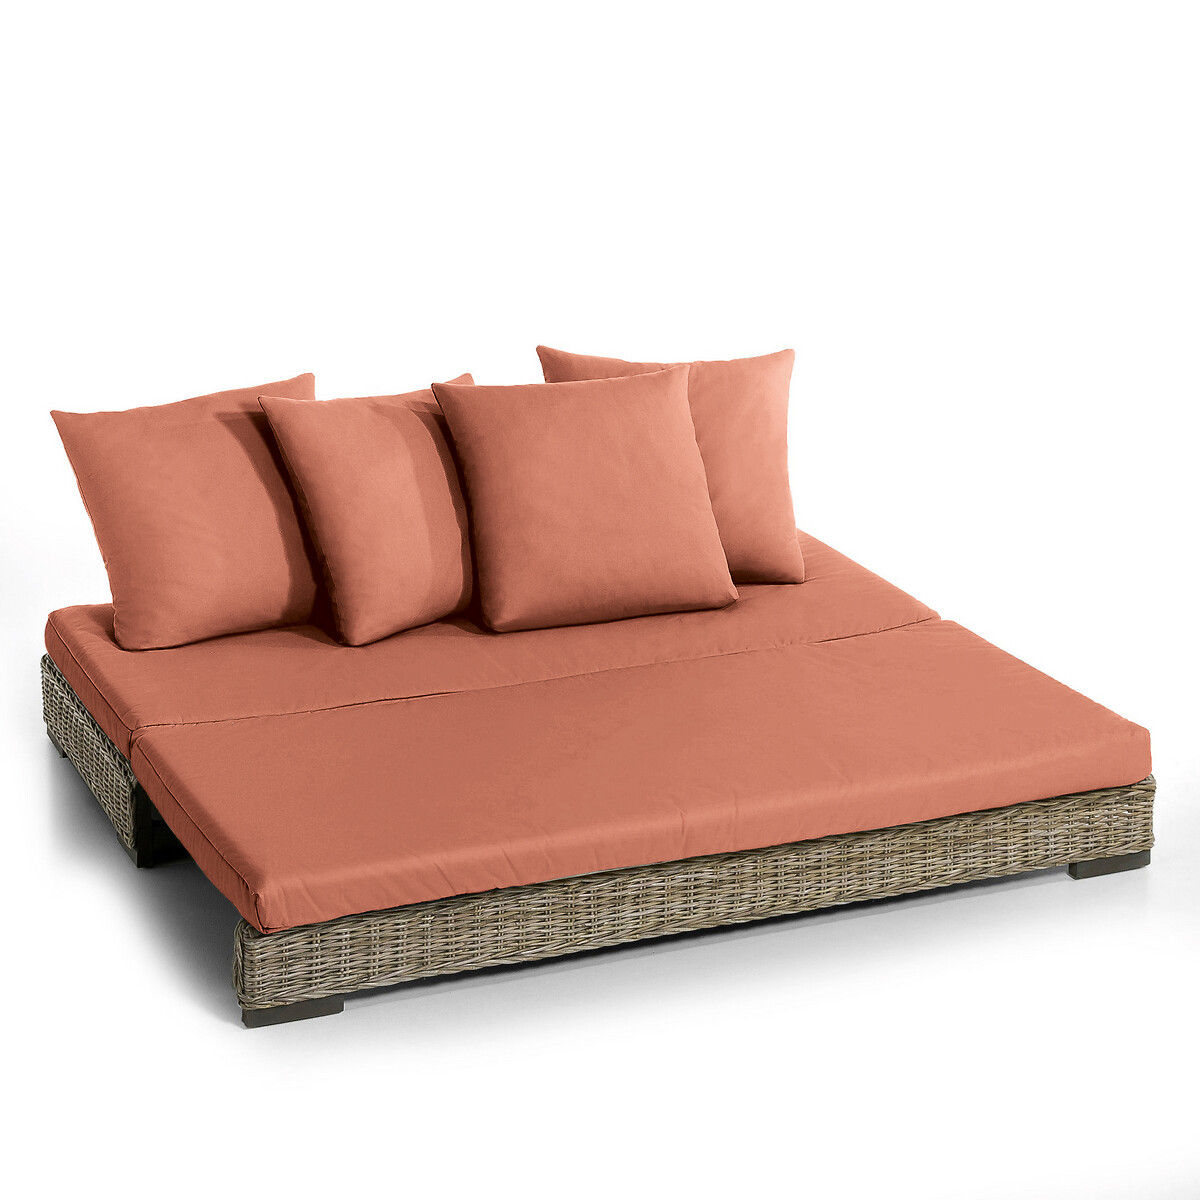 Матрас LaRedoute И подушки для дивана Giada 80 x 190 см каштановый, размер 80 x 190 см - фото 4